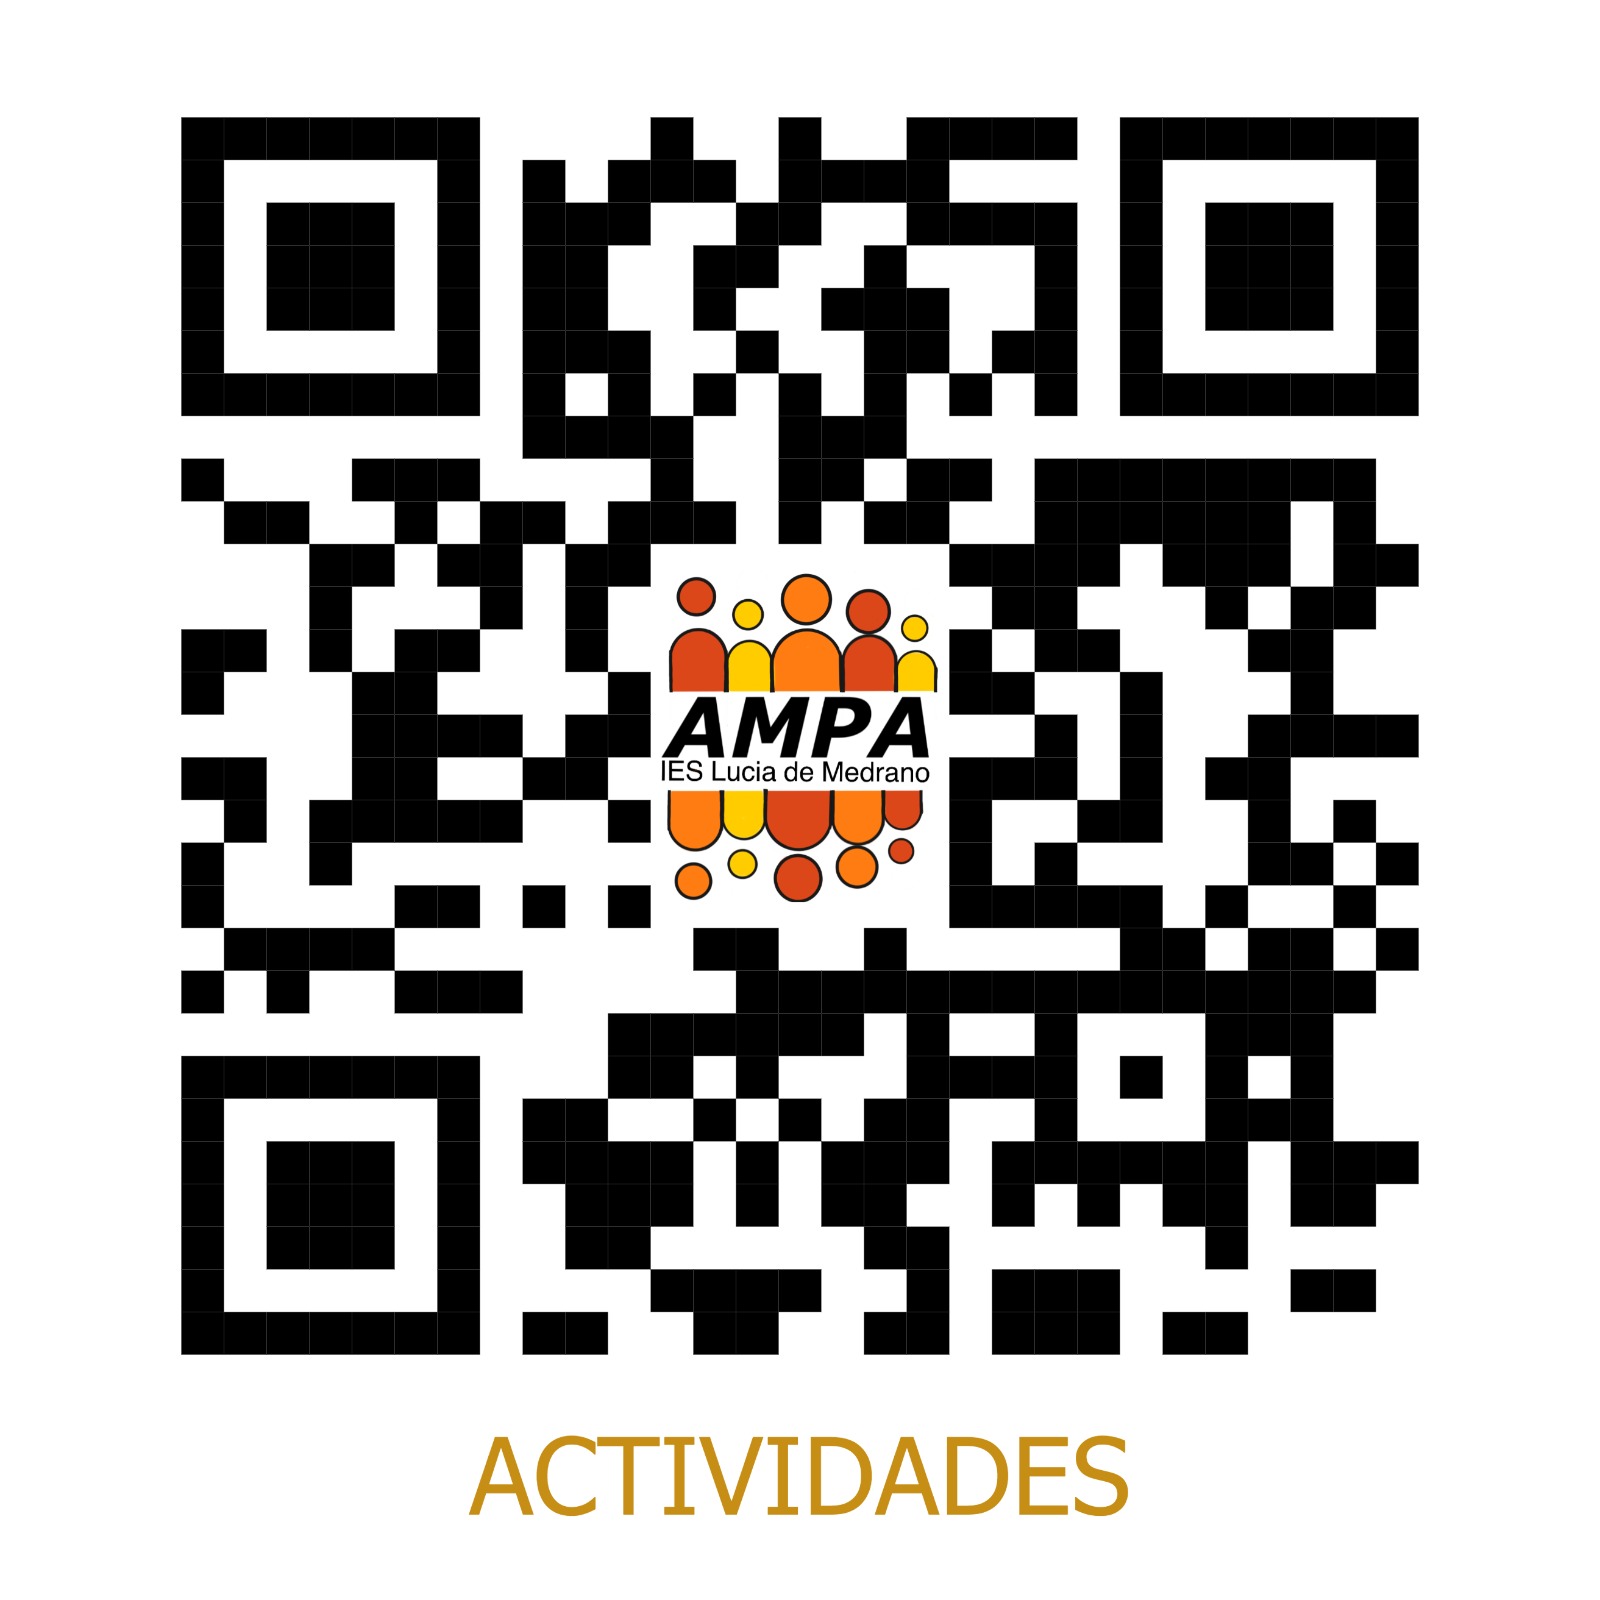 AMPA_ACTIVIDADES